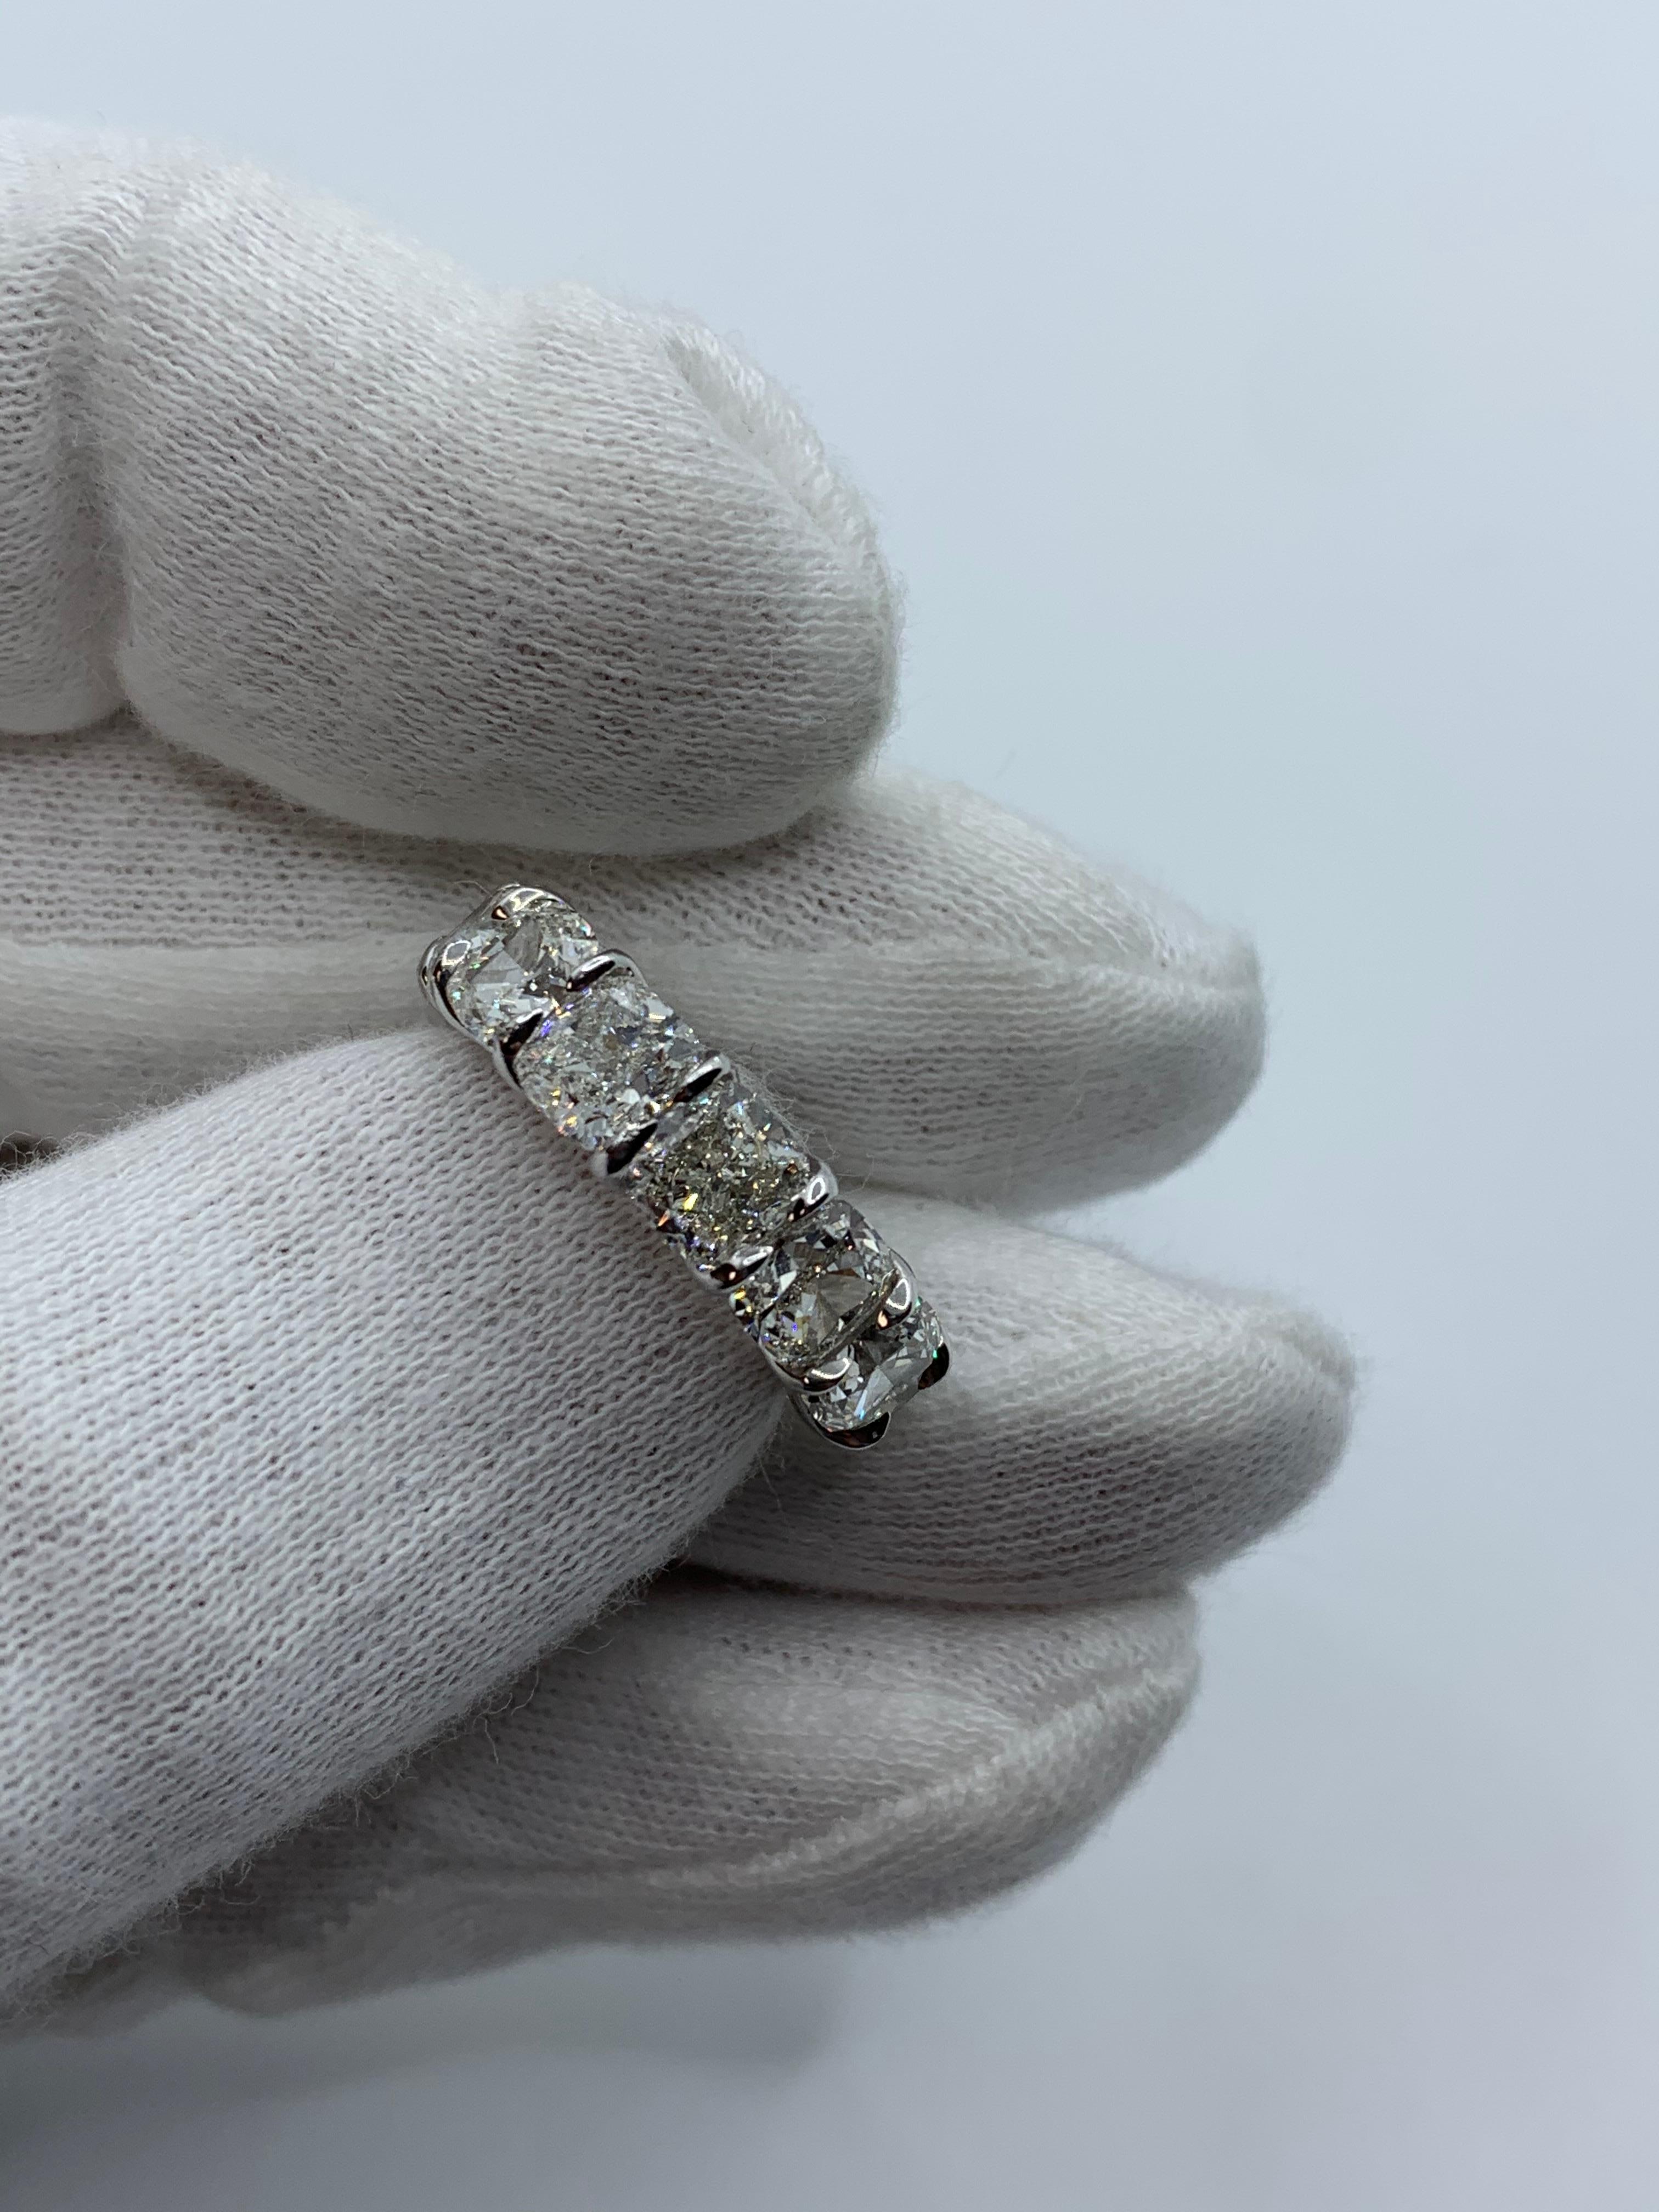 Ce magnifique bracelet éternel est serti de 13 diamants taille coussin parfaitement assortis, pesant chacun entre 1,5 et 1,5 million d'euros.  0,90ct à 0,96ct pour un total de 11,90 Carats. Chaque pierre est certifiée par le GIA comme étant de